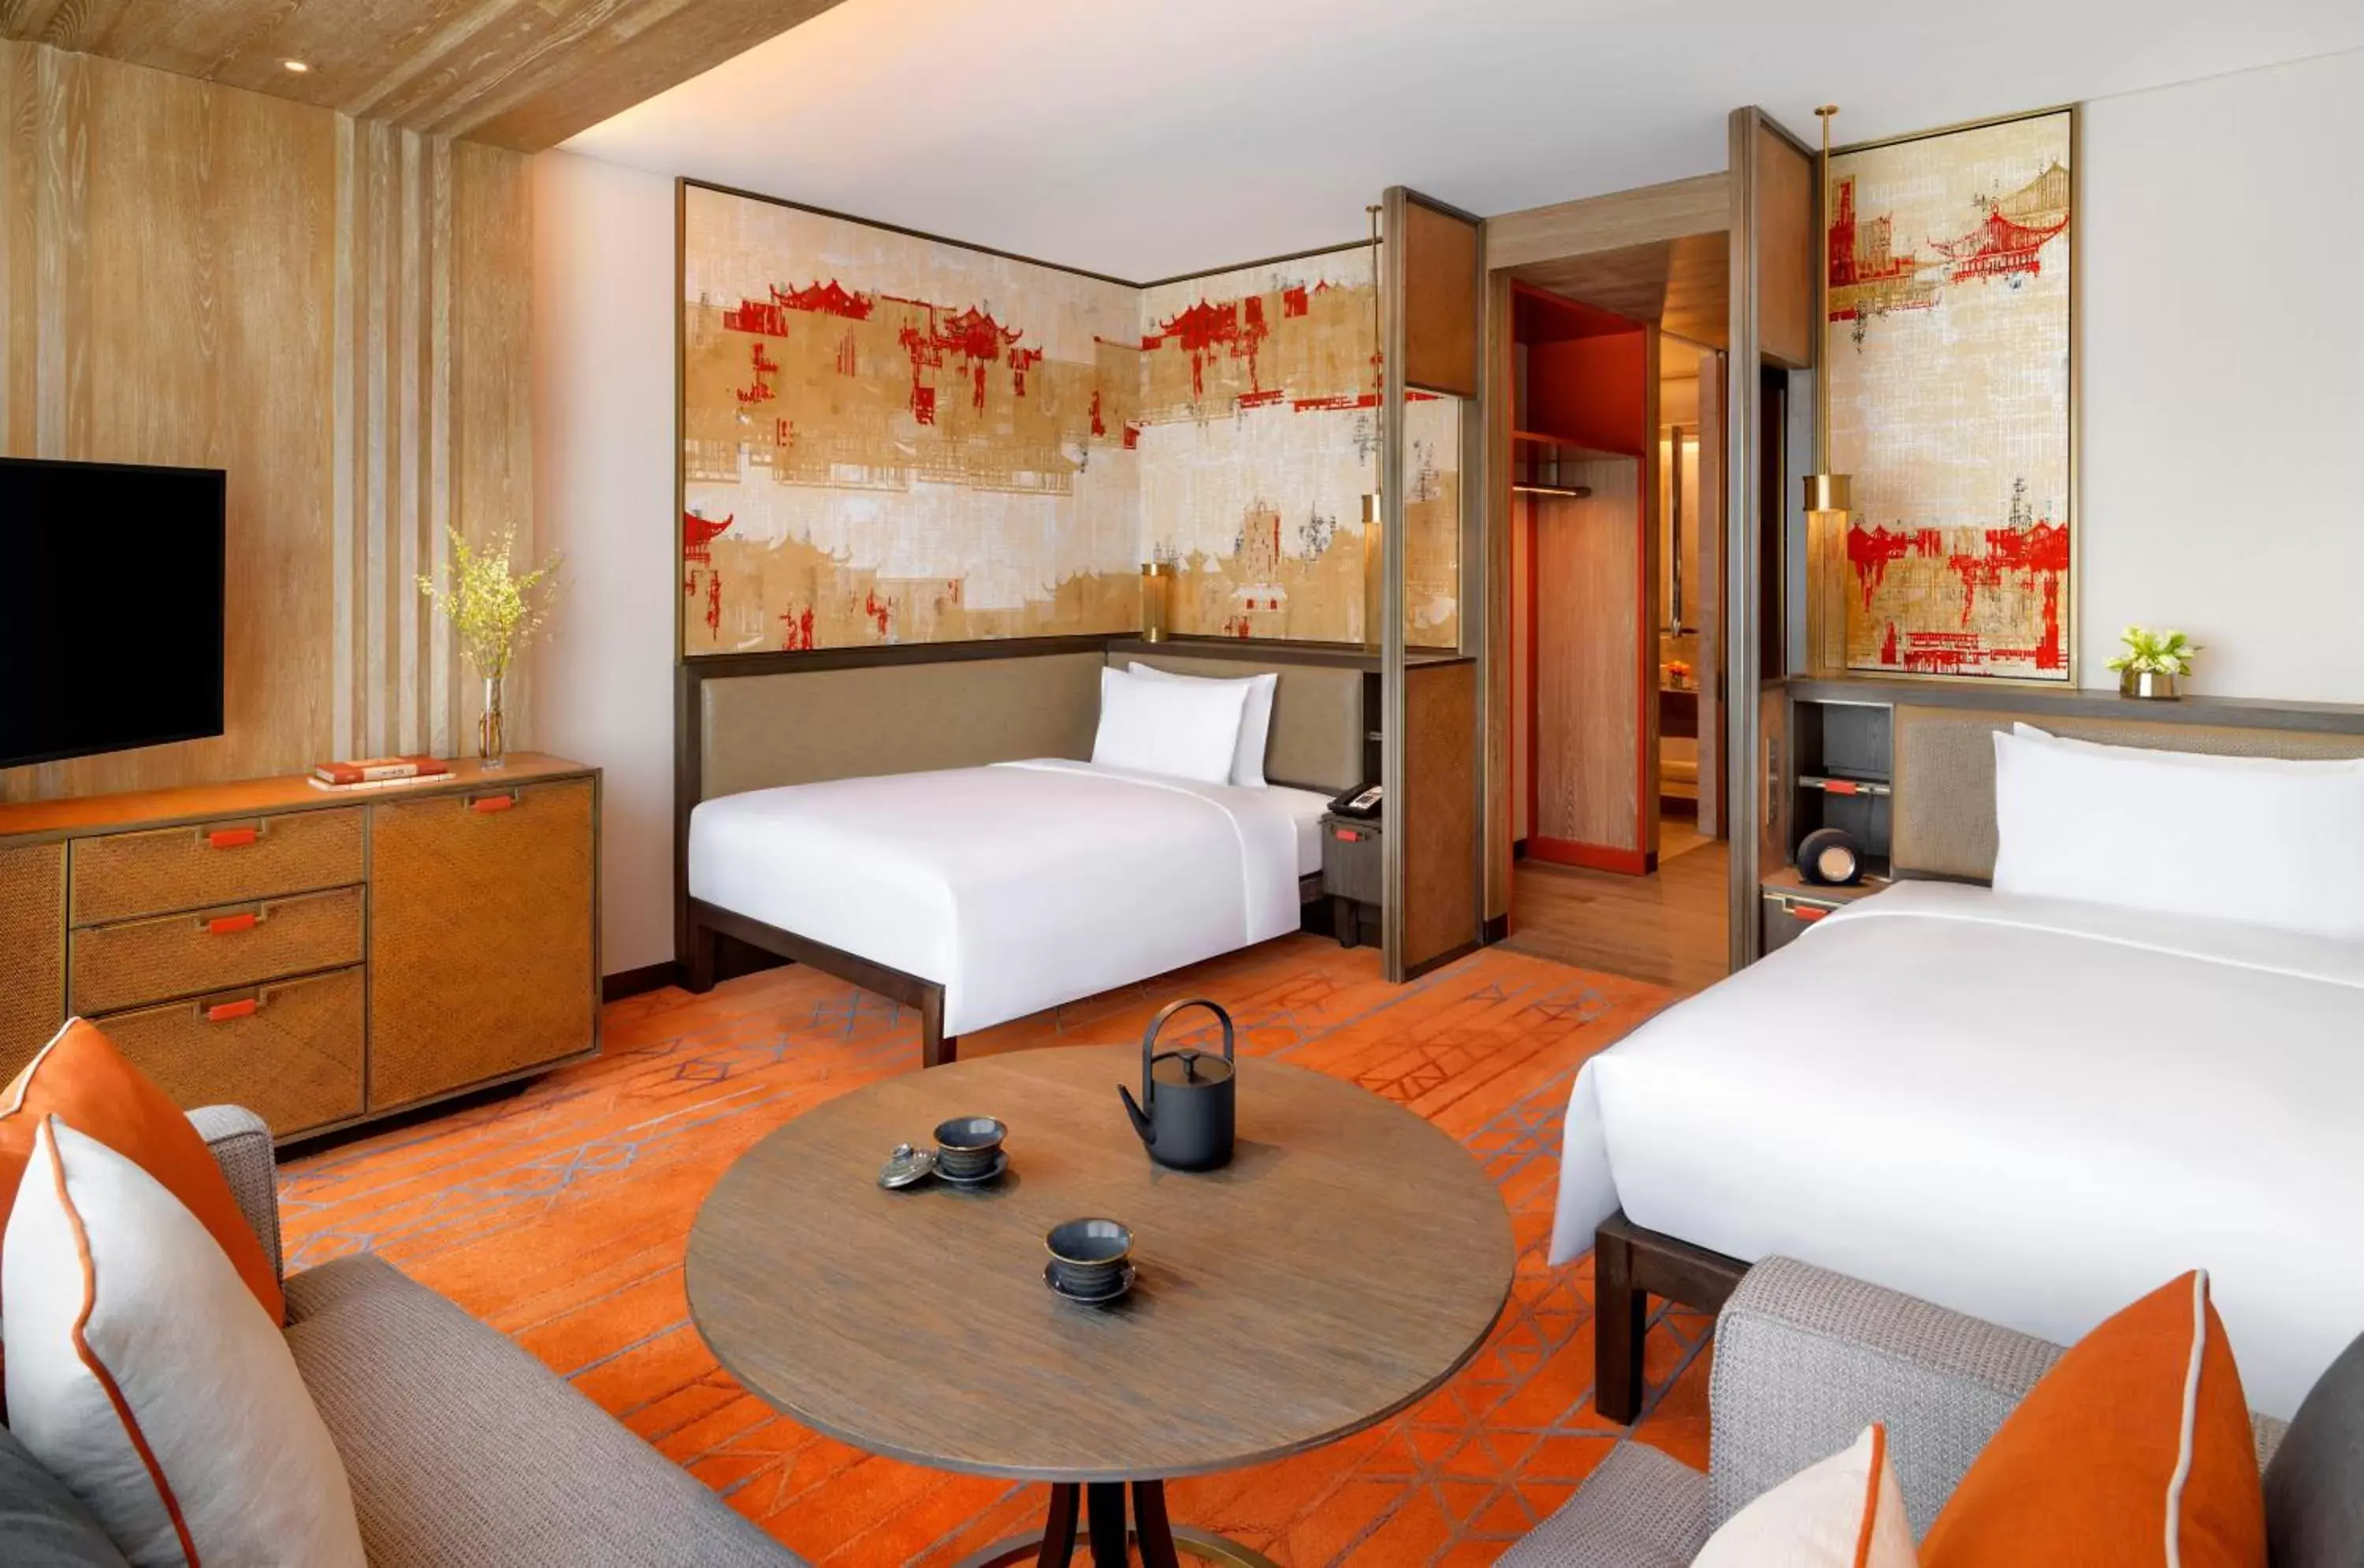 Bedroom, Bed in Grand Hyatt Xi'an